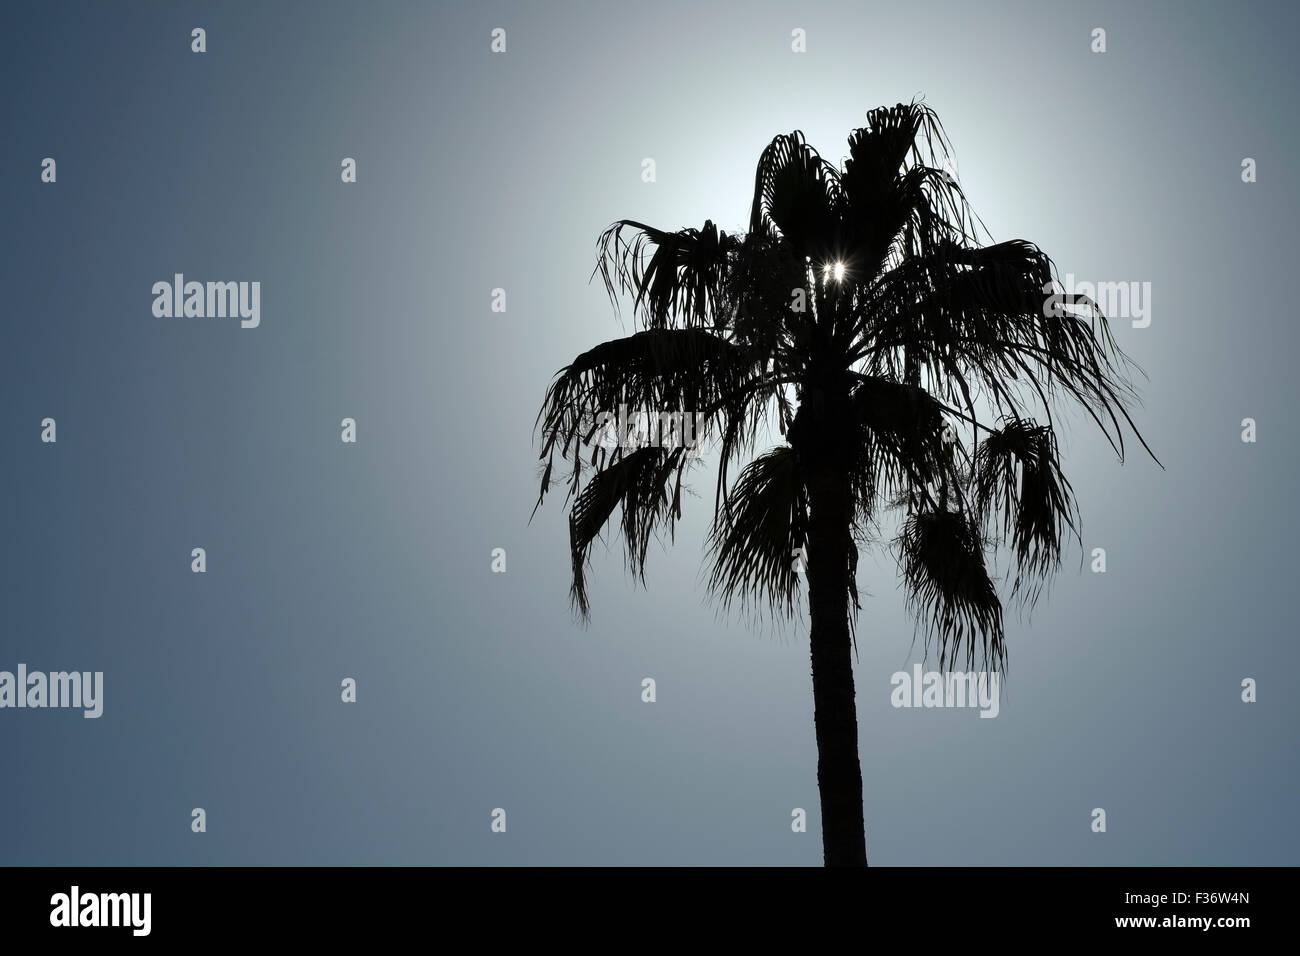 Palm tree silhouette Stock Photo - Alamy